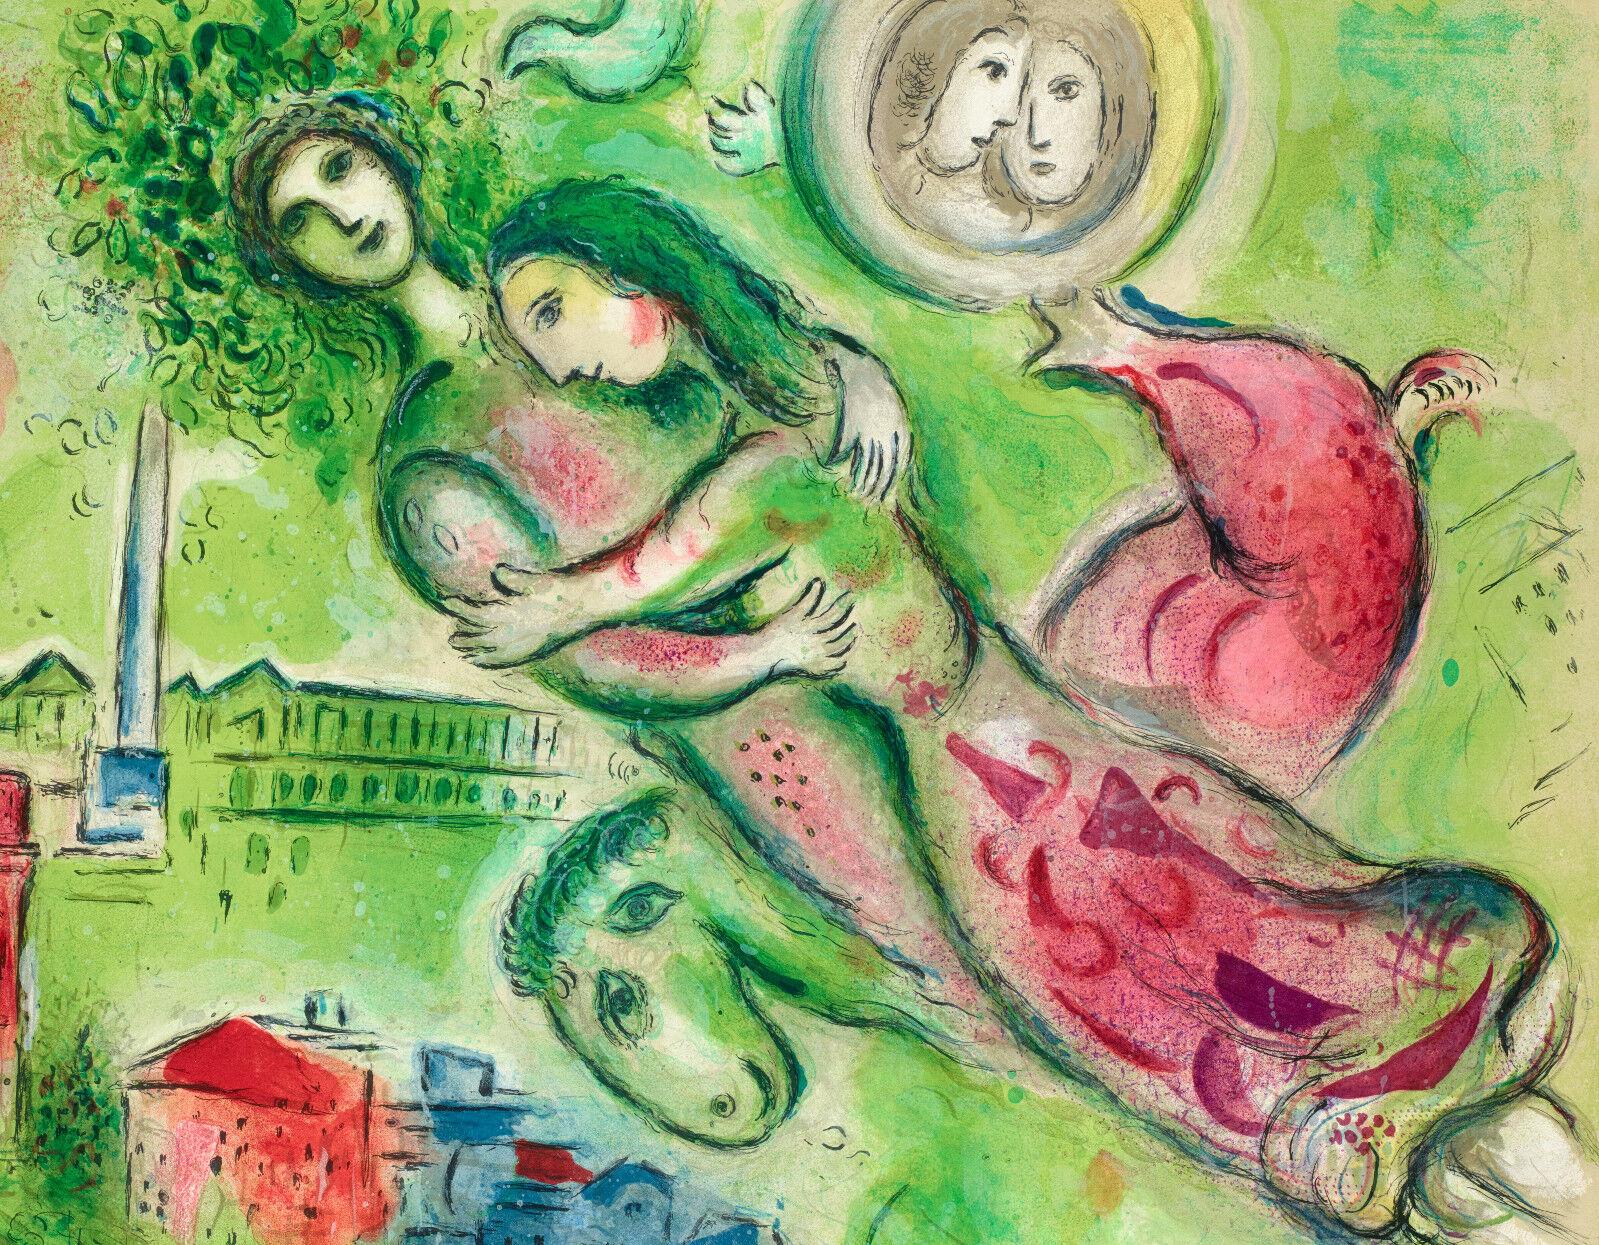 Affiche originale-Marc Chagall-Opéra Paris-Romeo et Juliette-Amour, 1964

Un détail du plafond de l'Opéra Garnier peint par Marc Chagall est représenté : Romeo et Juliette.

Détails supplémentaires :

Taille (l x h) : 25.2 x 38.6 in / 64 x 98.1